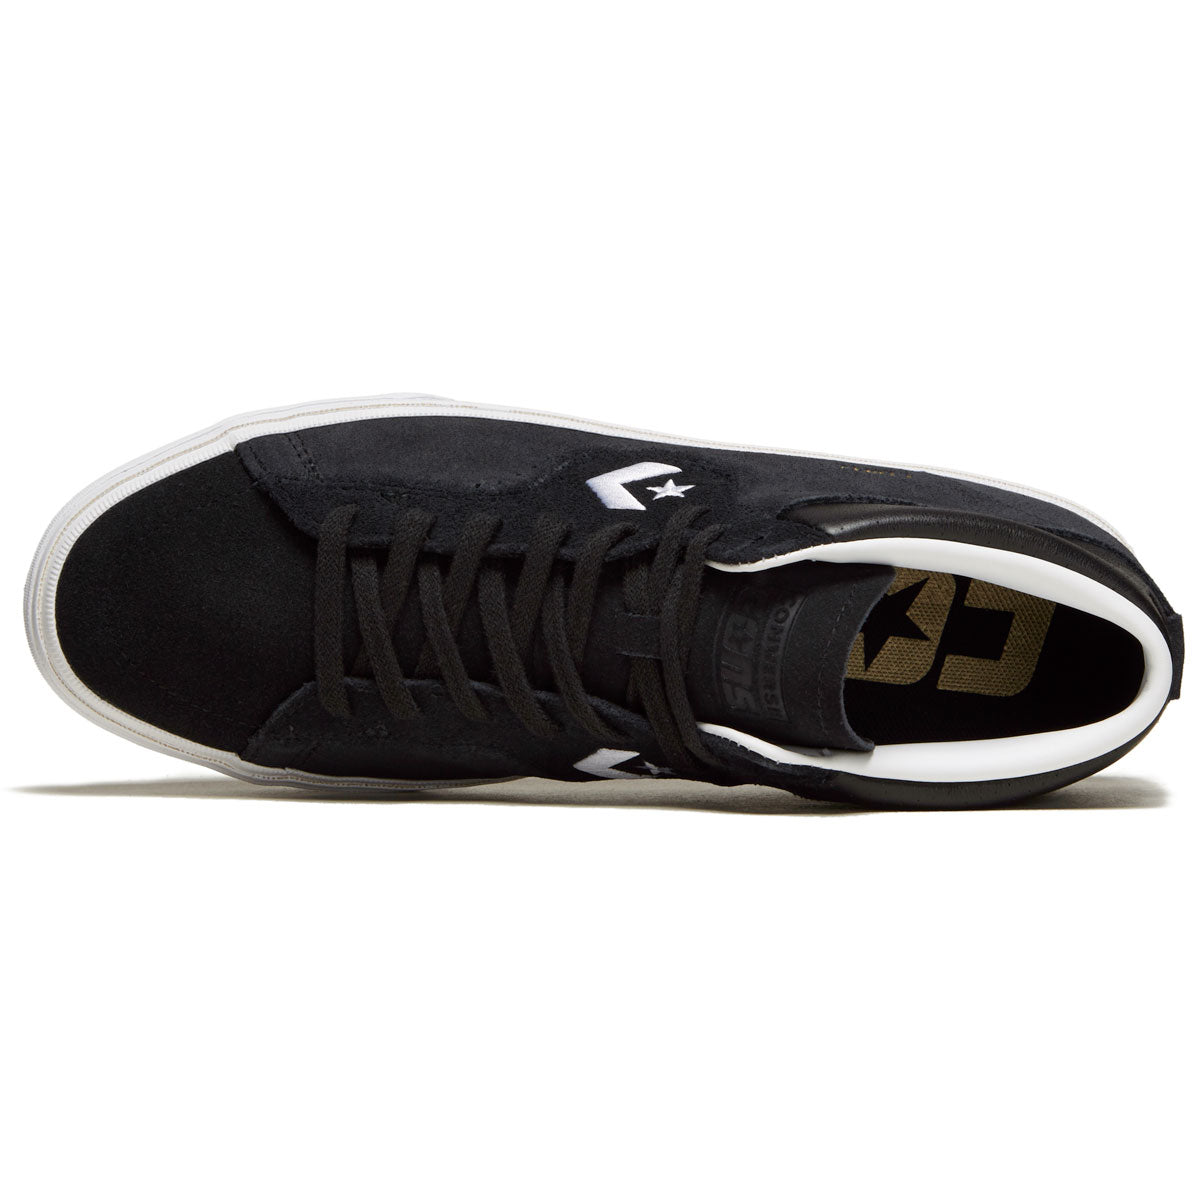 Converse Louie Lopez Pro Mid Shoes - Black/Black/White image 3